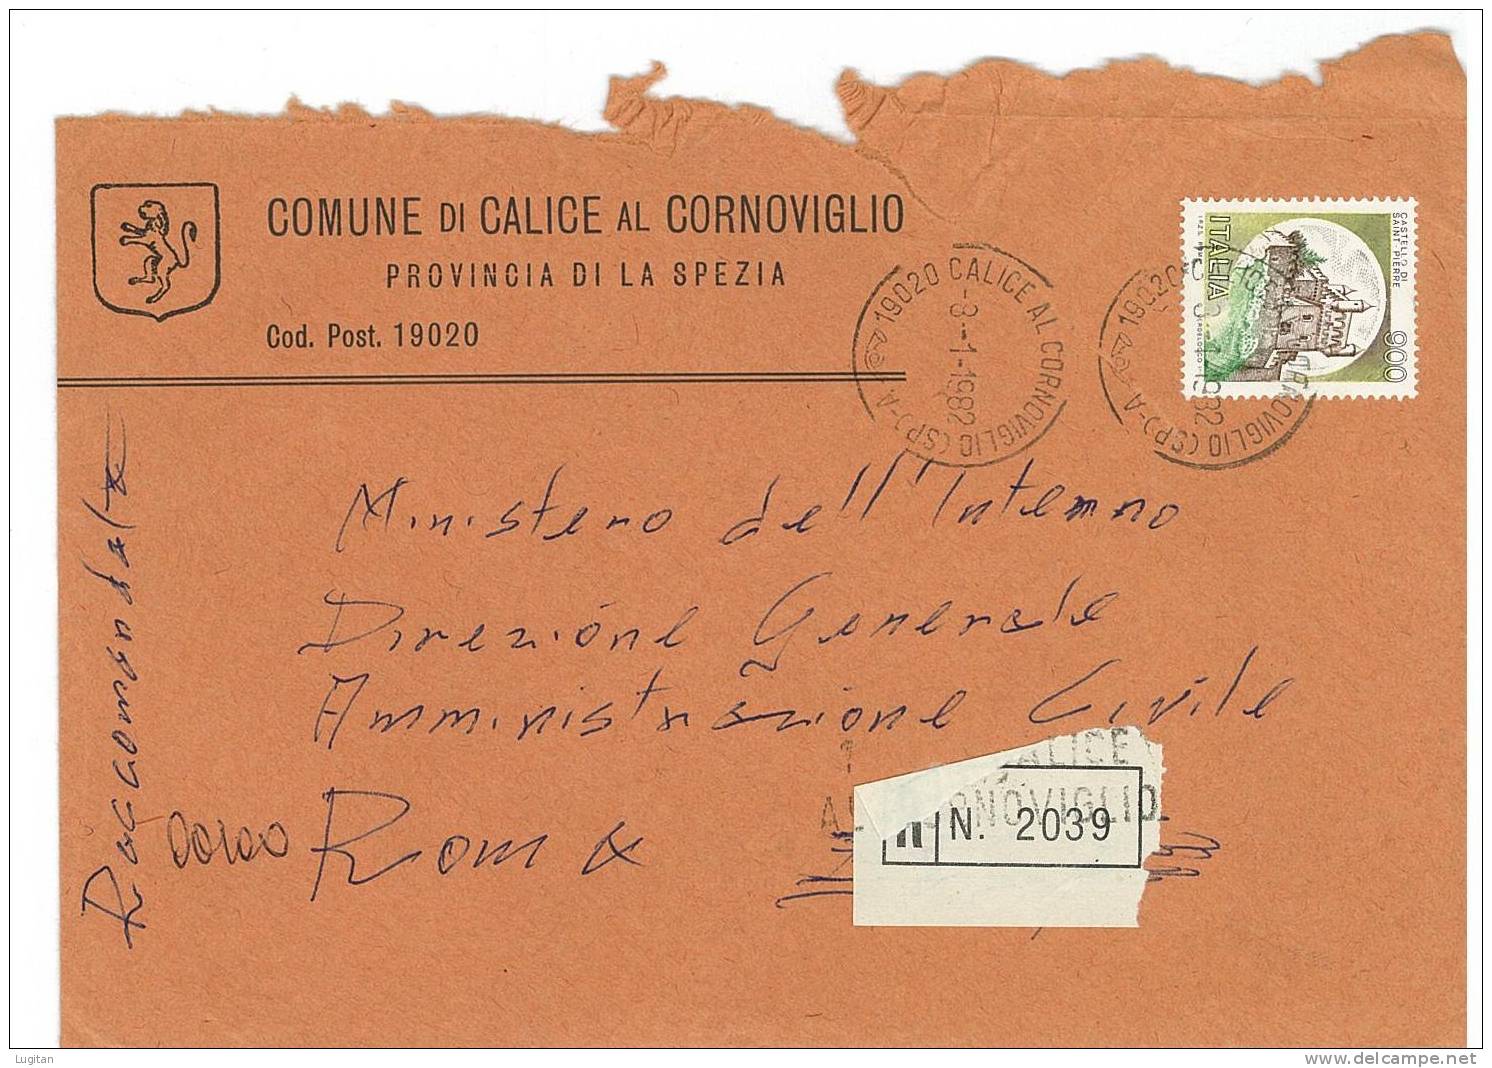 CALICE AL CORNOVIGLIO CAP 19020 PROV. SPEZIA  ANNO 1982 - SP  R  LIGURIA  -TEMATICA COMUNI D'ITALIA - STORIA POSTALE - Macchine Per Obliterare (EMA)